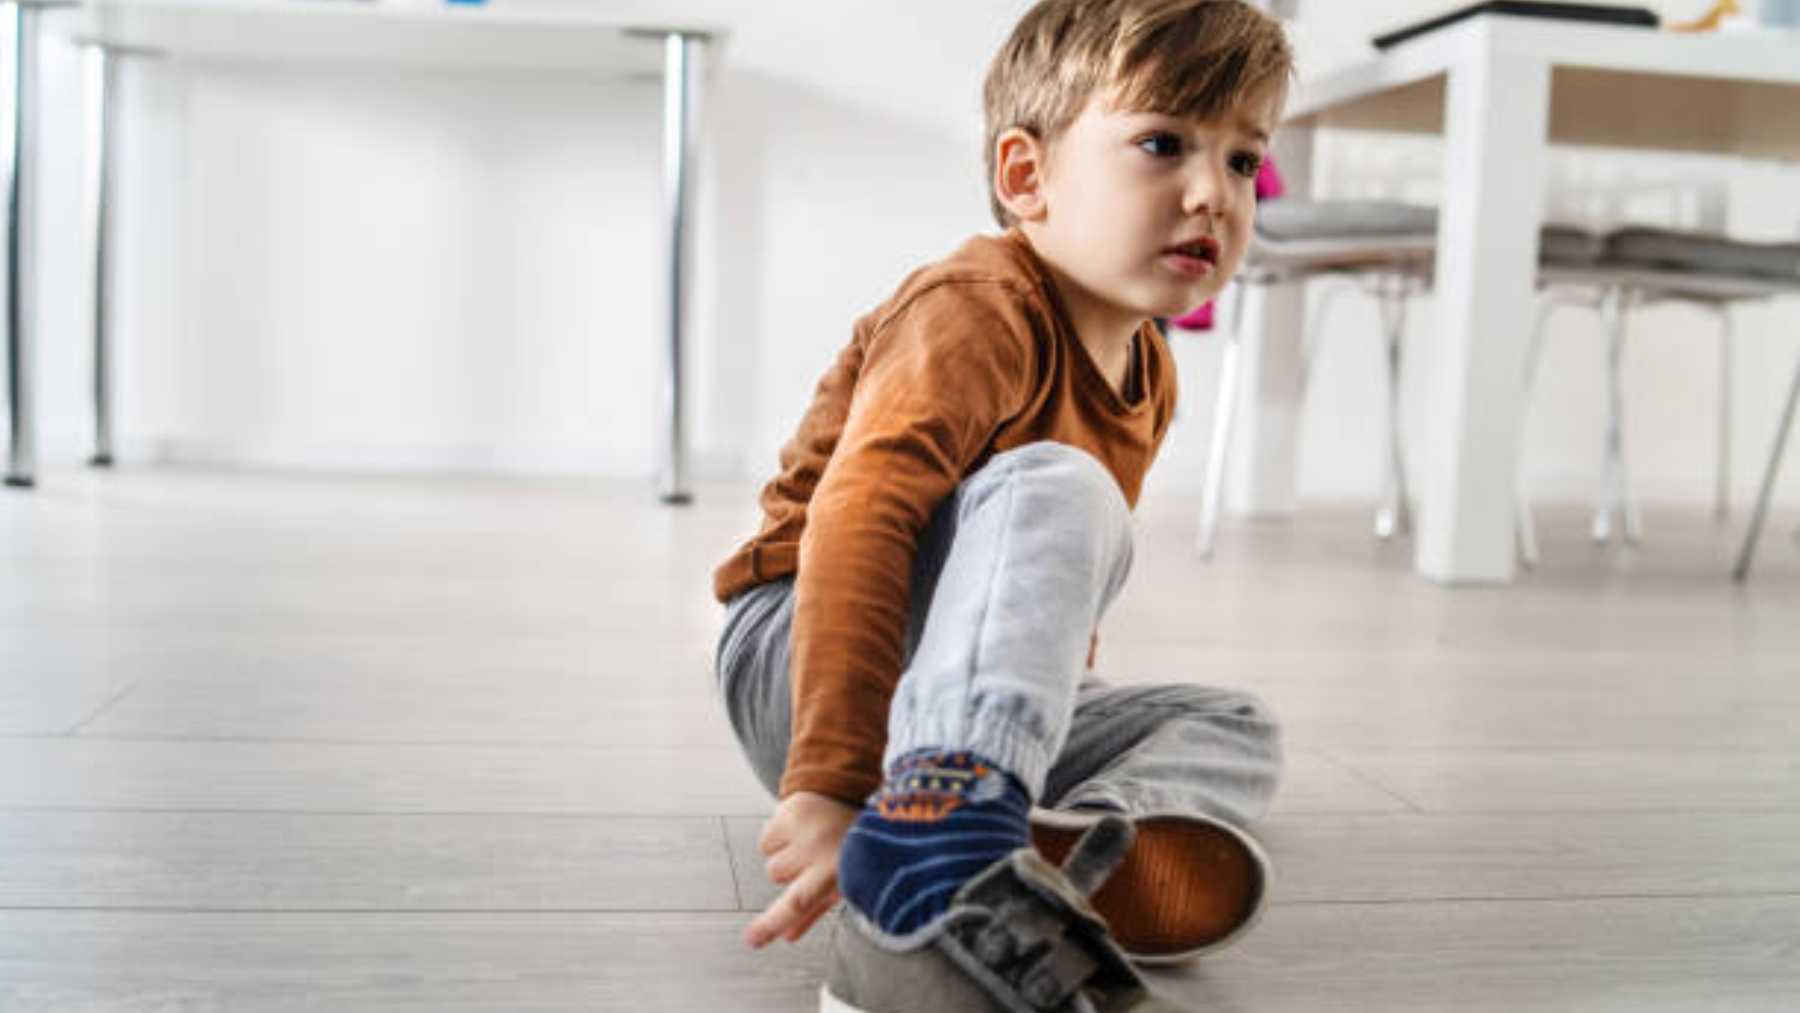 Descubre el truco de redes para que los niños se pongan bien los zapatos